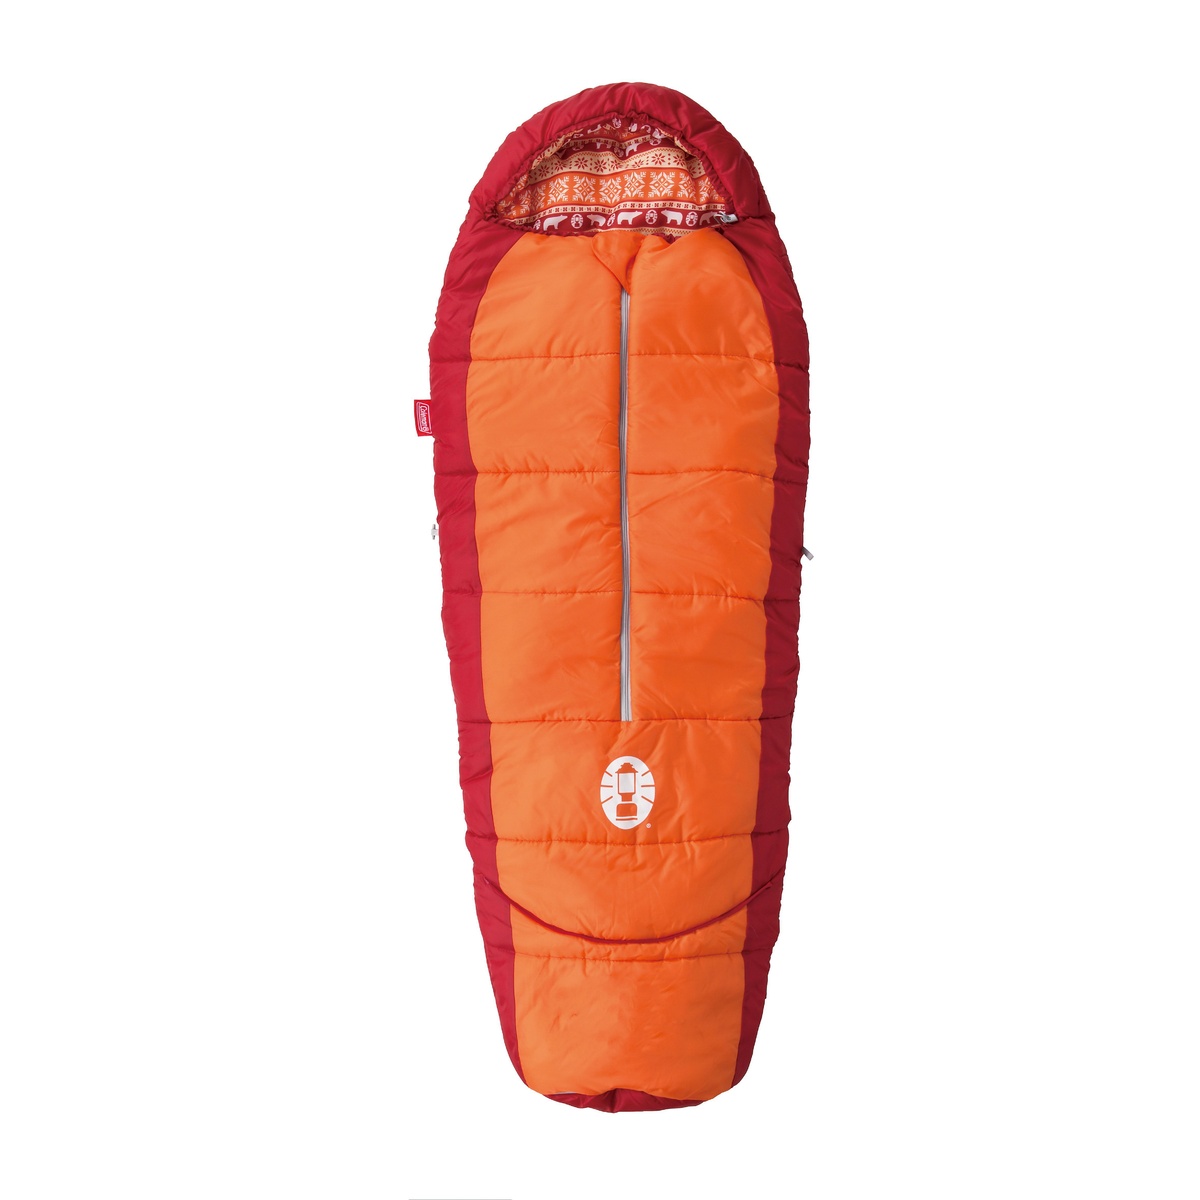 コールマン キャンプ用品 寝袋 至上 スリーピングバッグ ジュニア用 キッズマミー COLEMAN 激安通販ショッピング アジャスタブル オレンジ C4オレンジ 2000027271